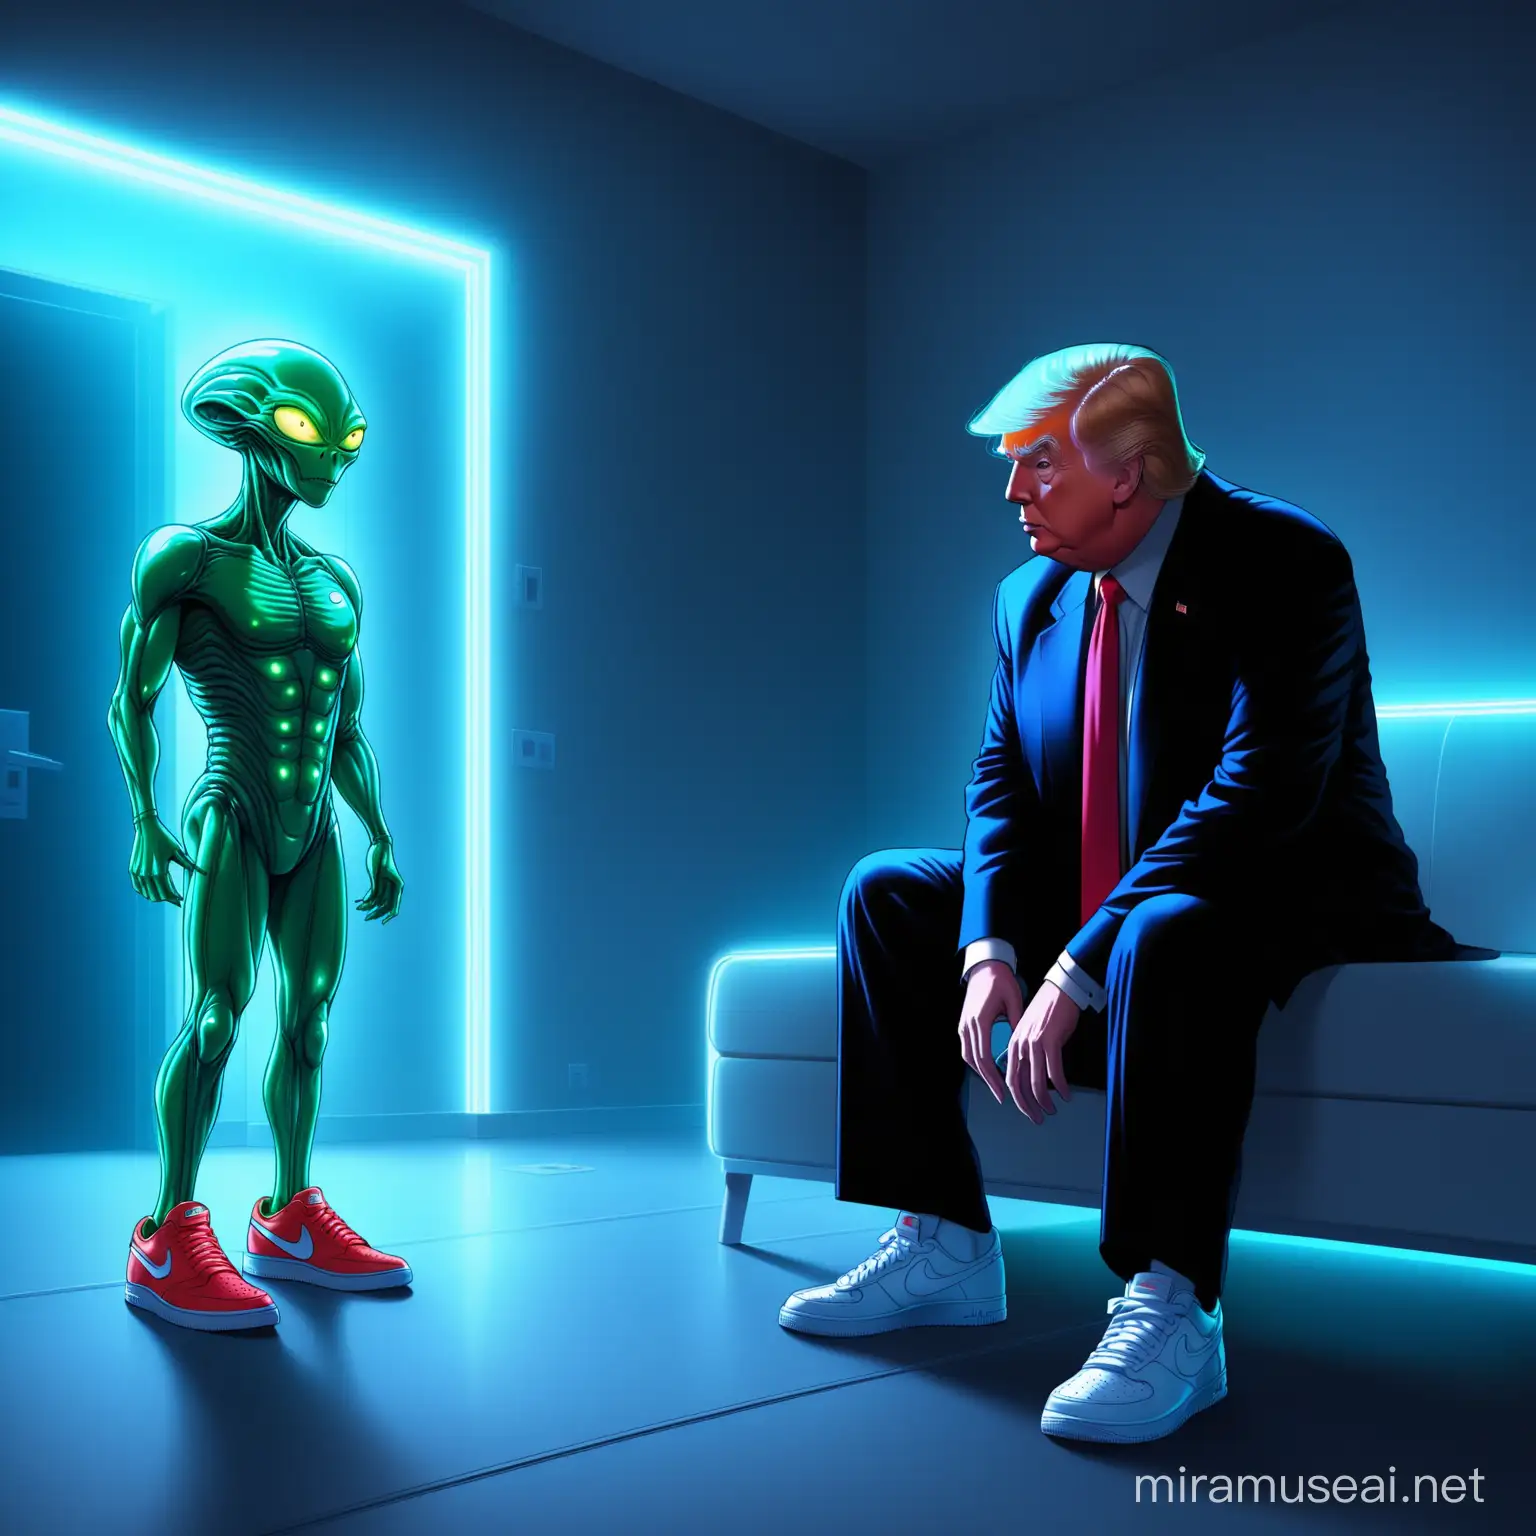 4k Funny Donald Trump in Nike Sneakers meet a alien in a Modern Neonlit room